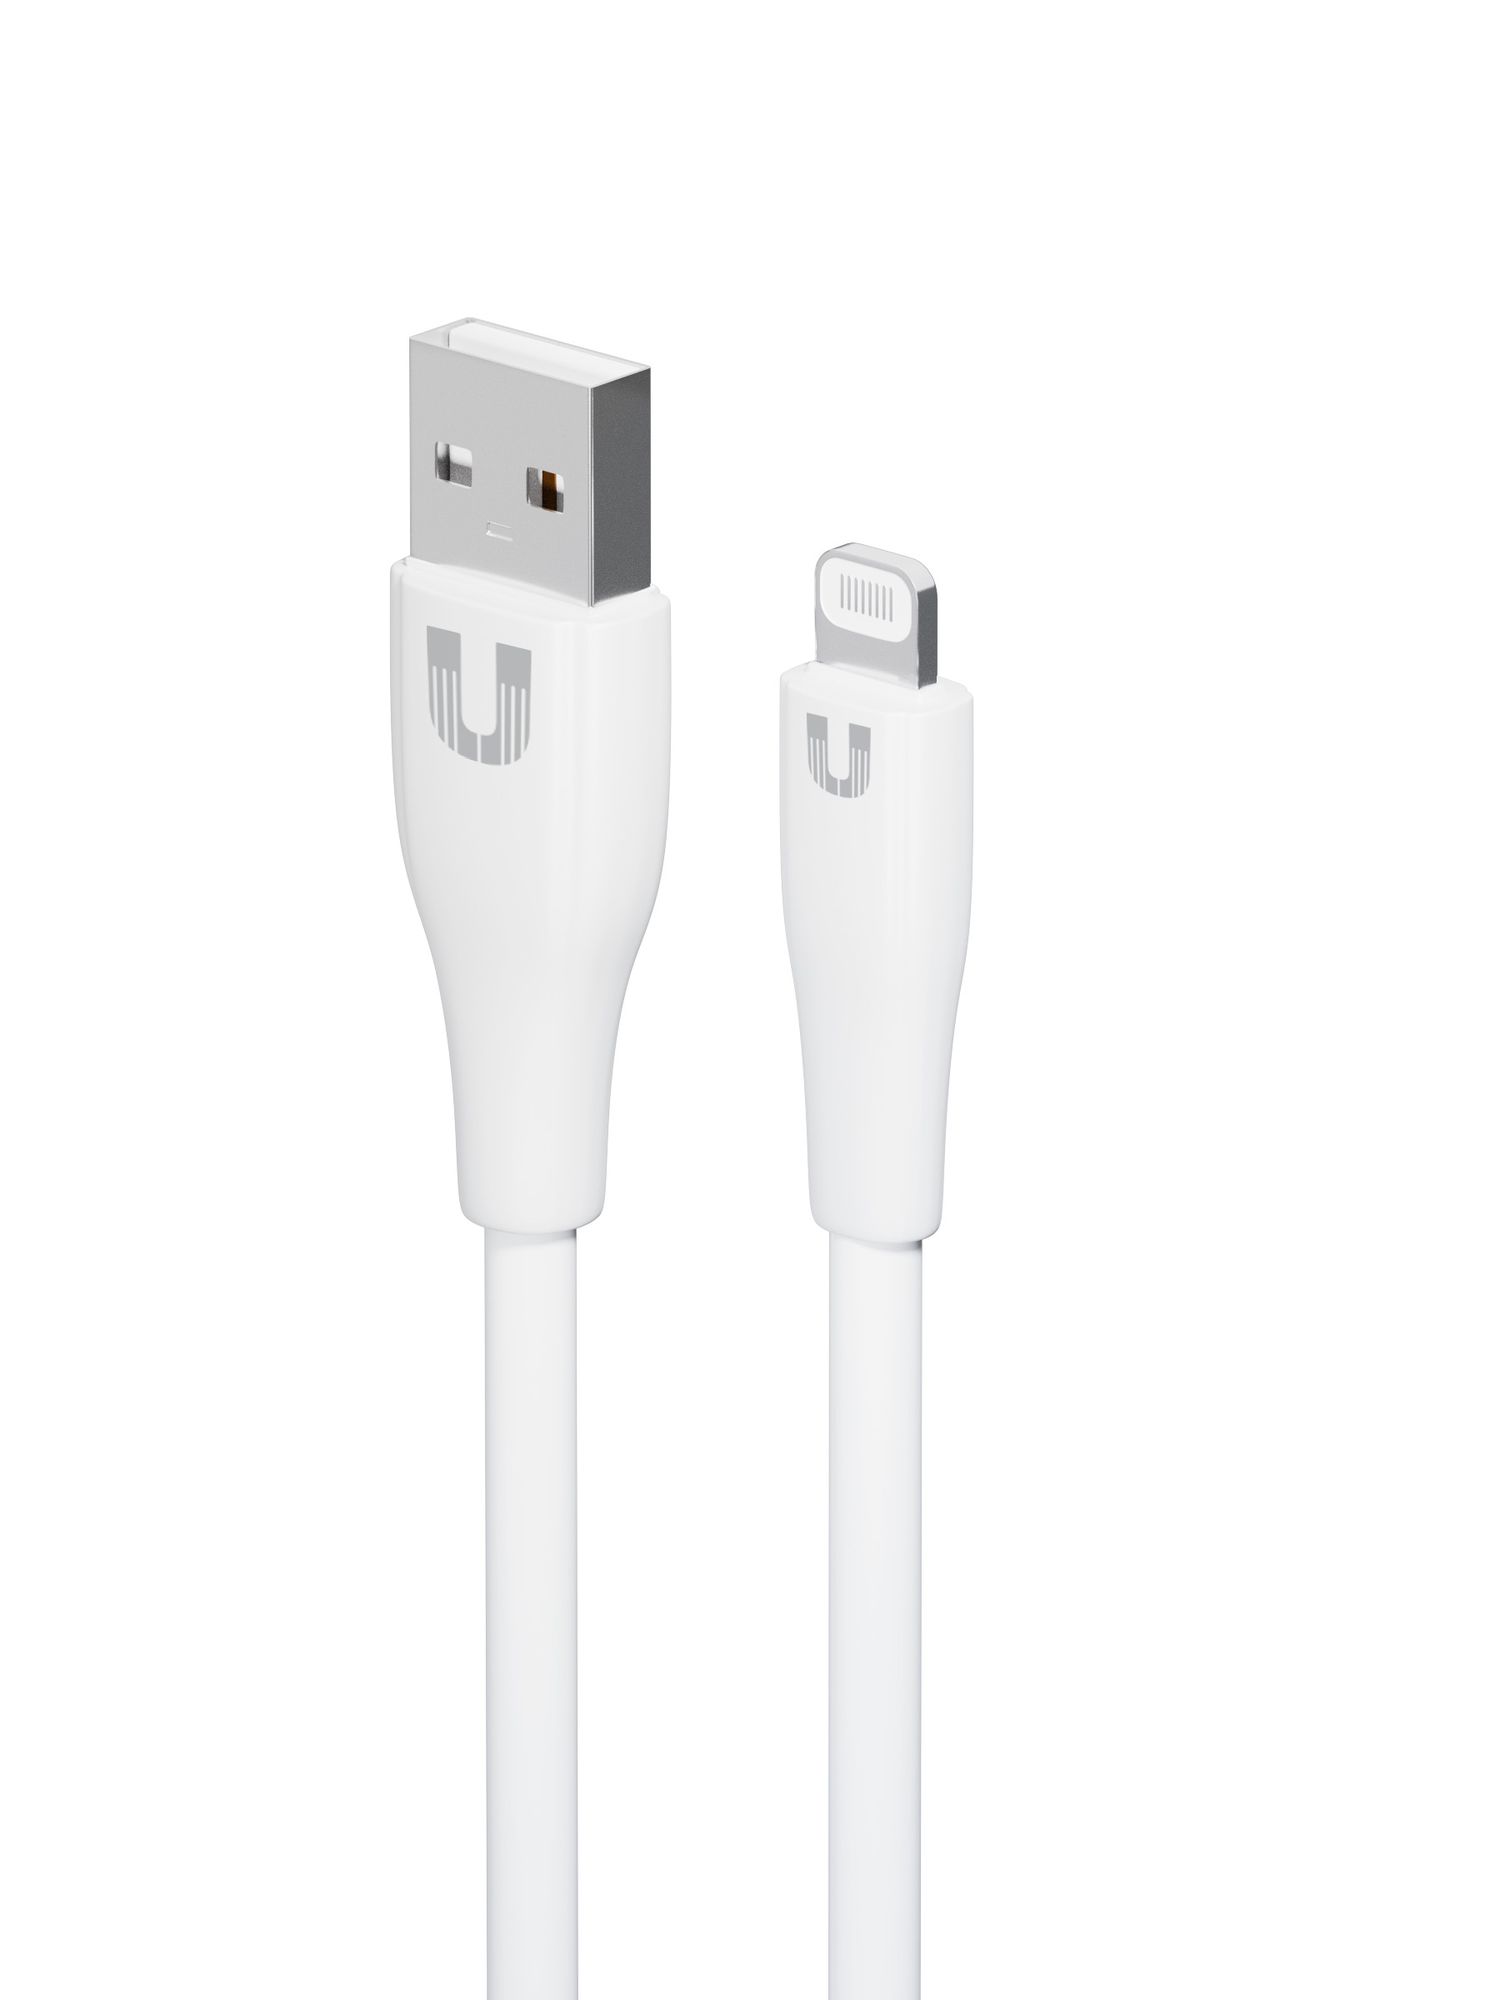 Дата-кабель Uzay USB A - Lightning, 1.2м, белый